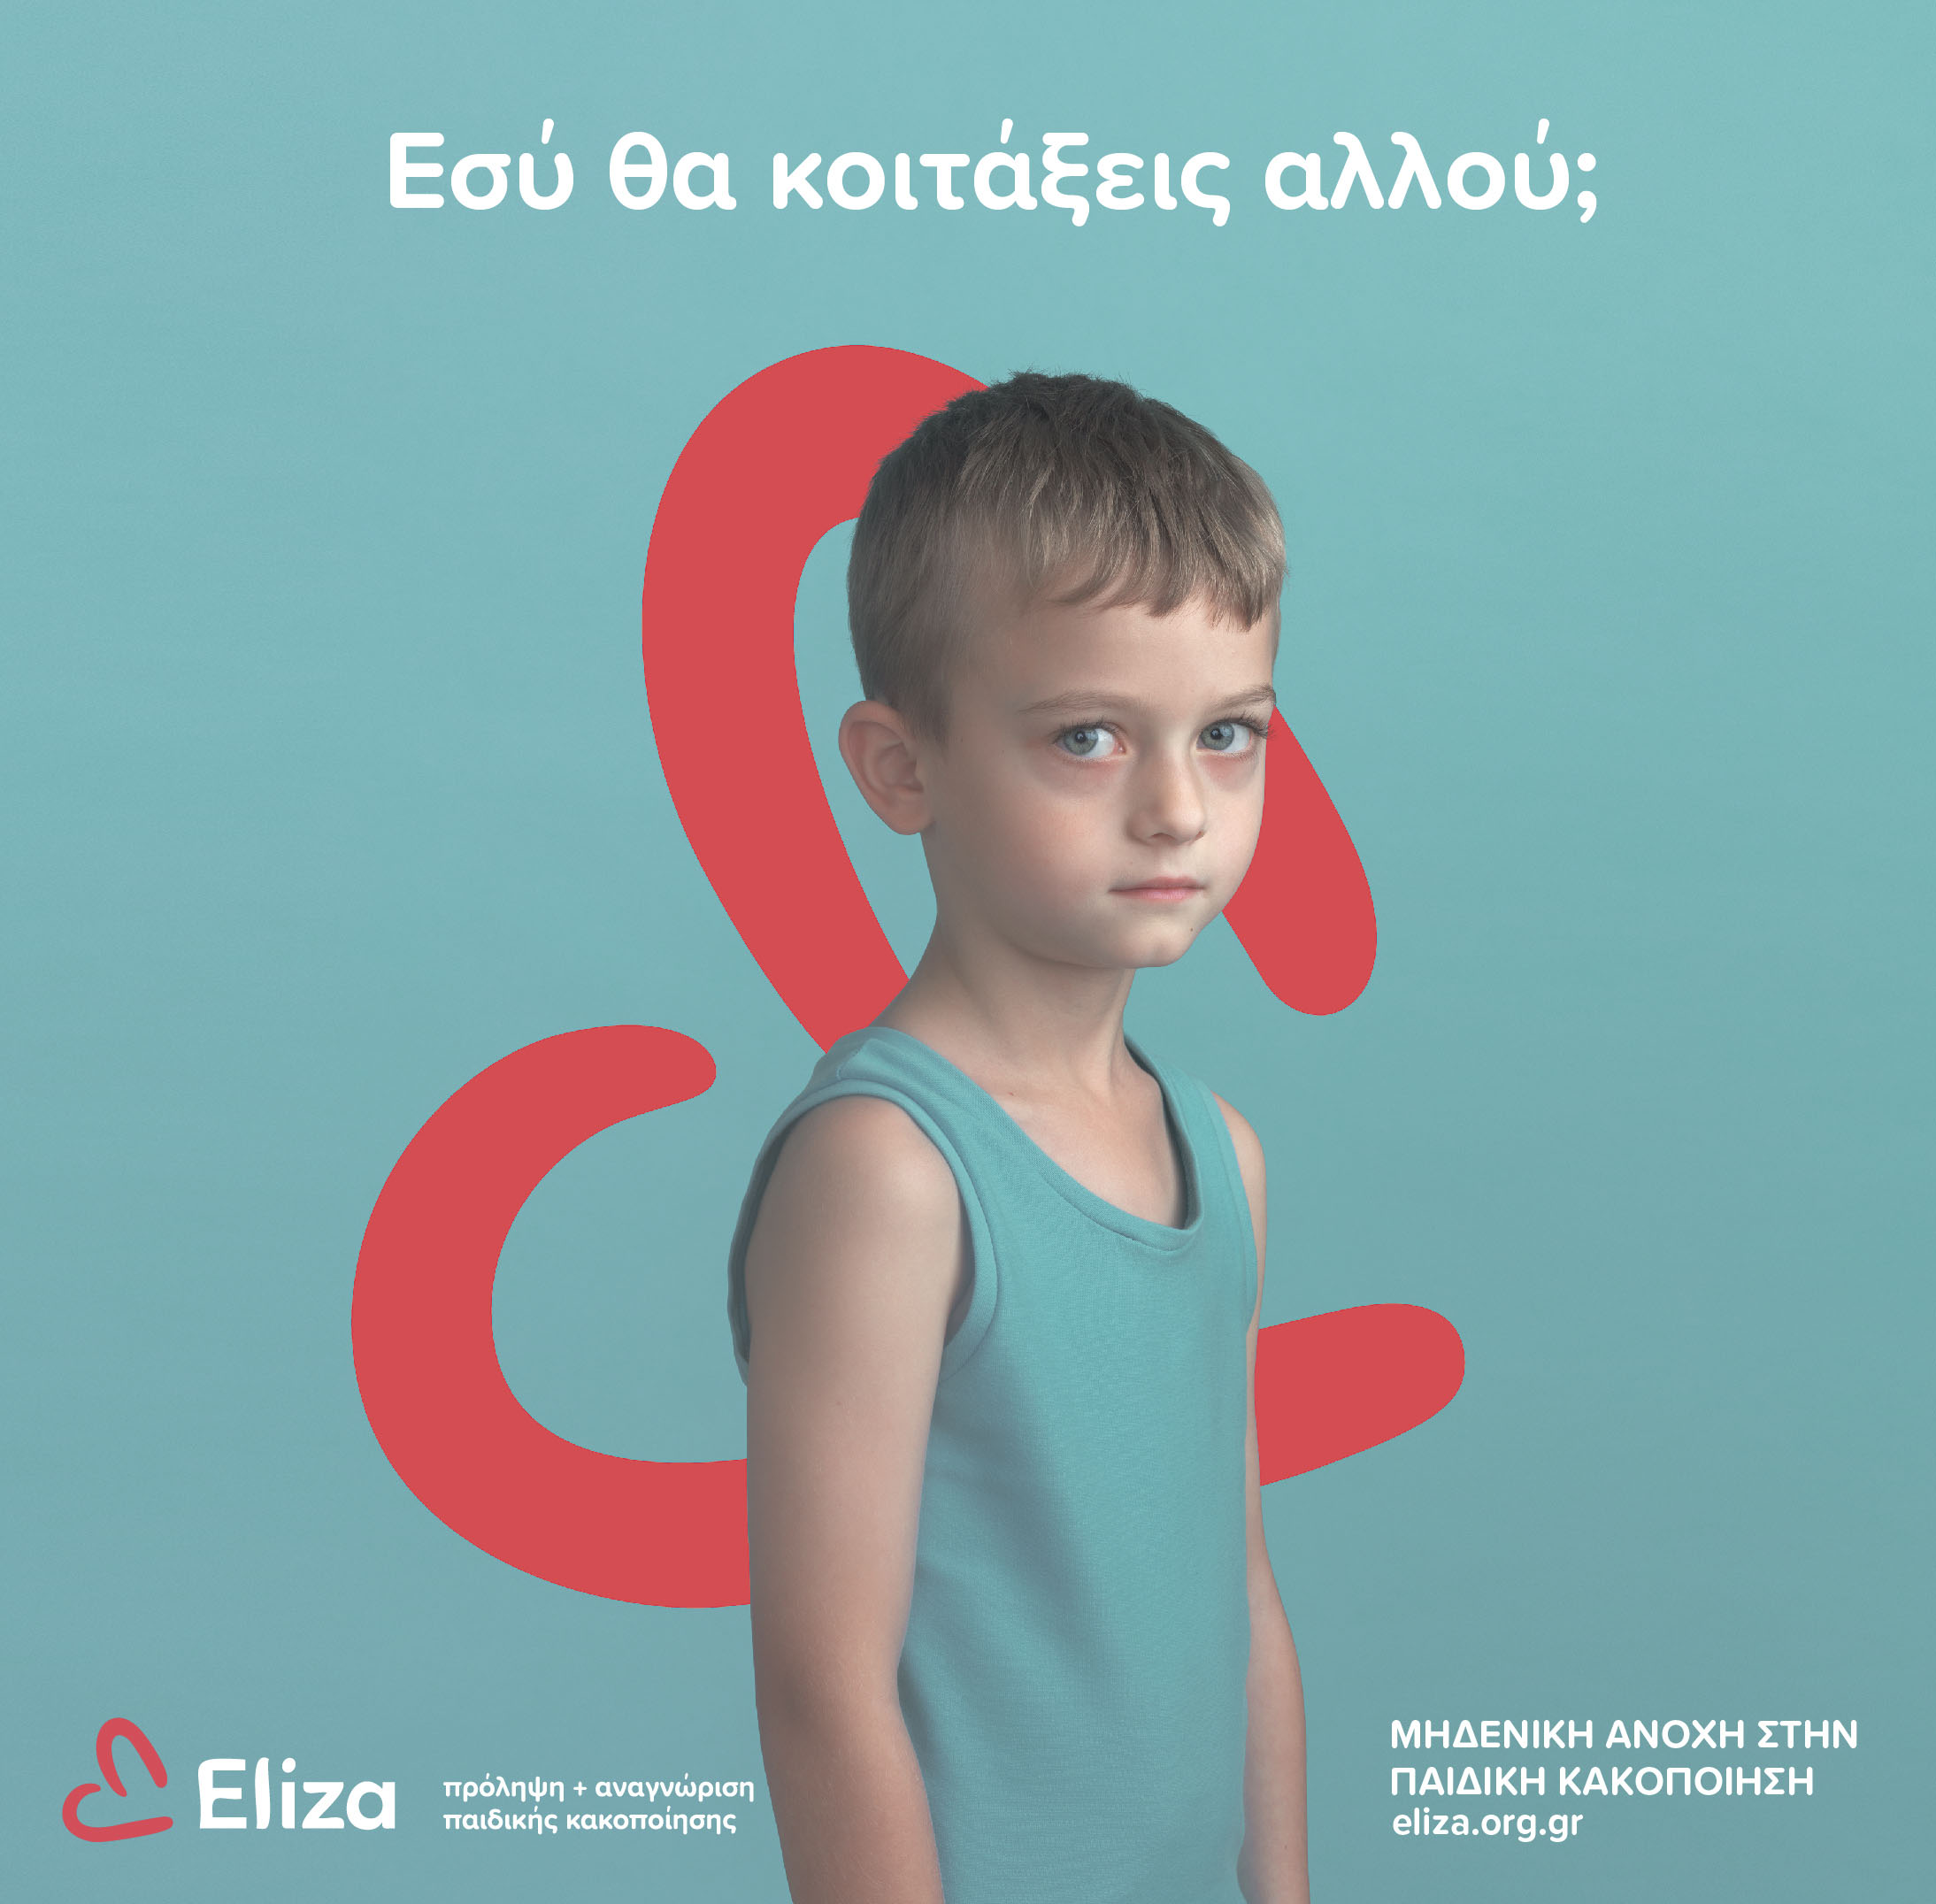 eliza_campaign.jpg